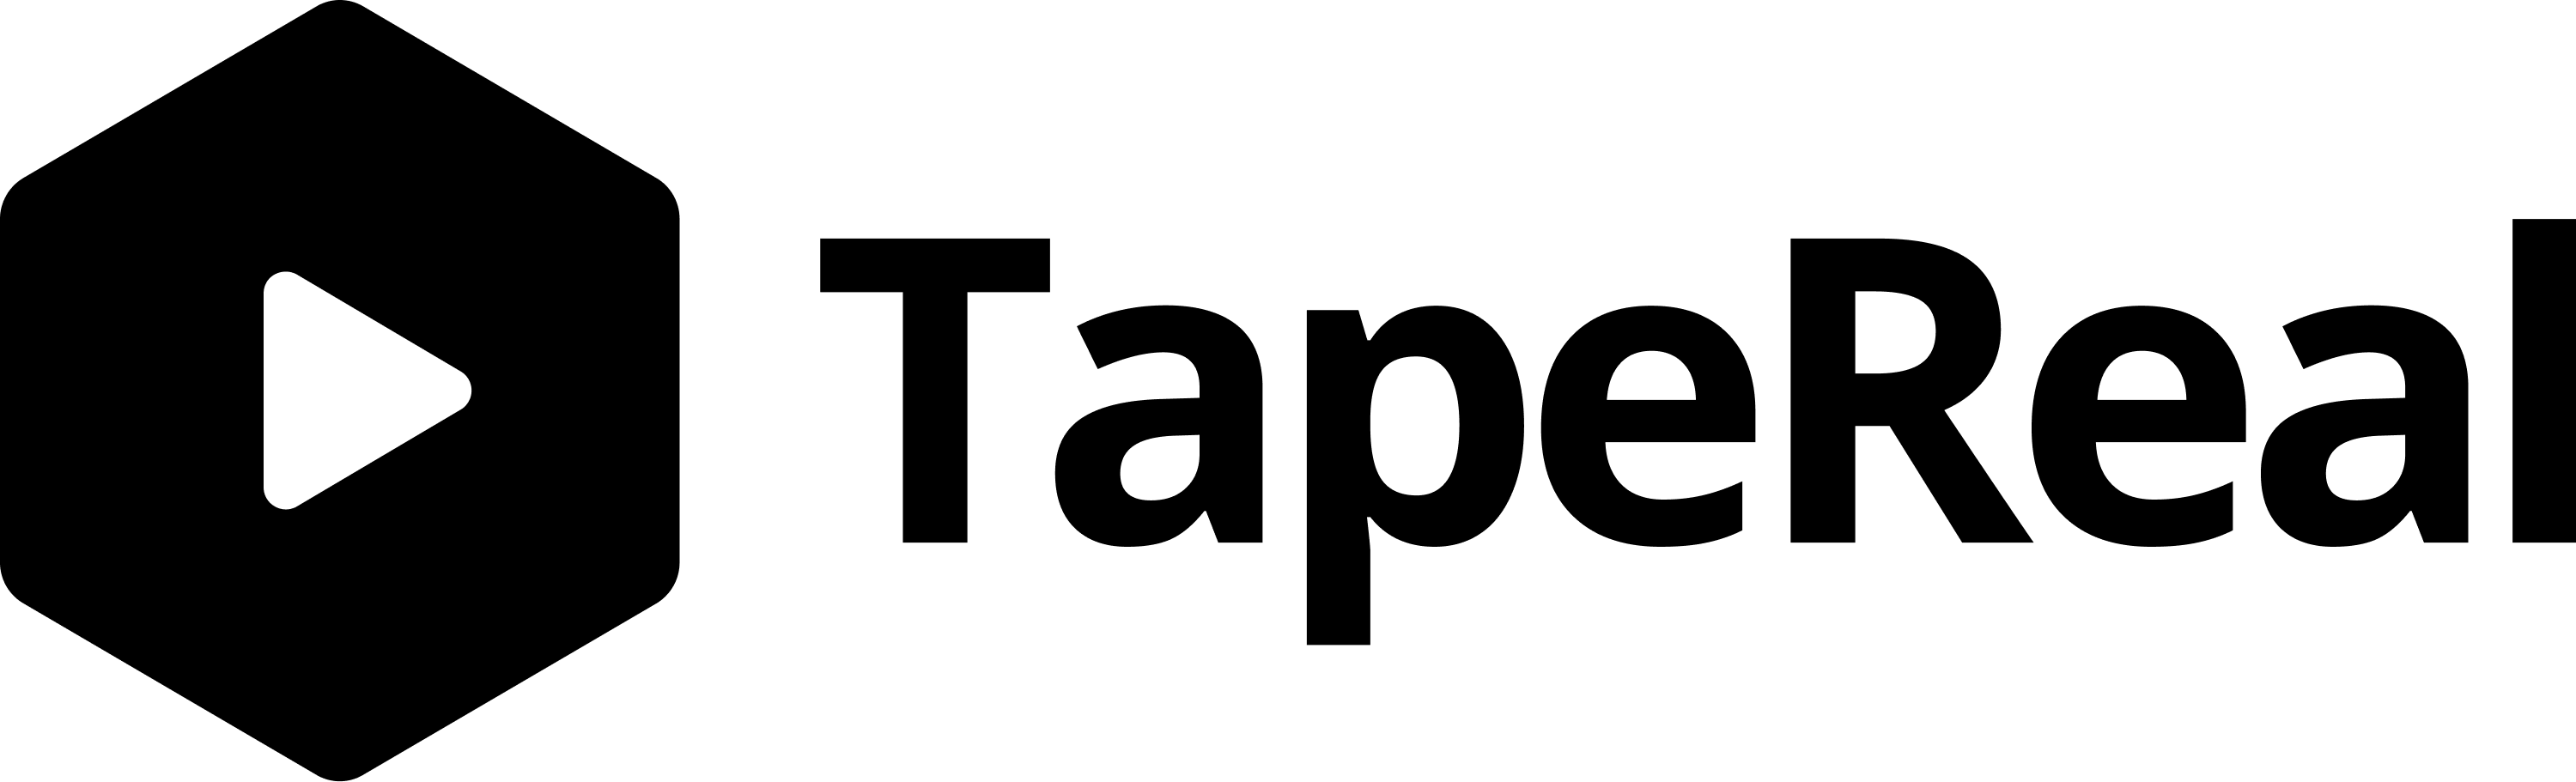 Tapereal social media logo black